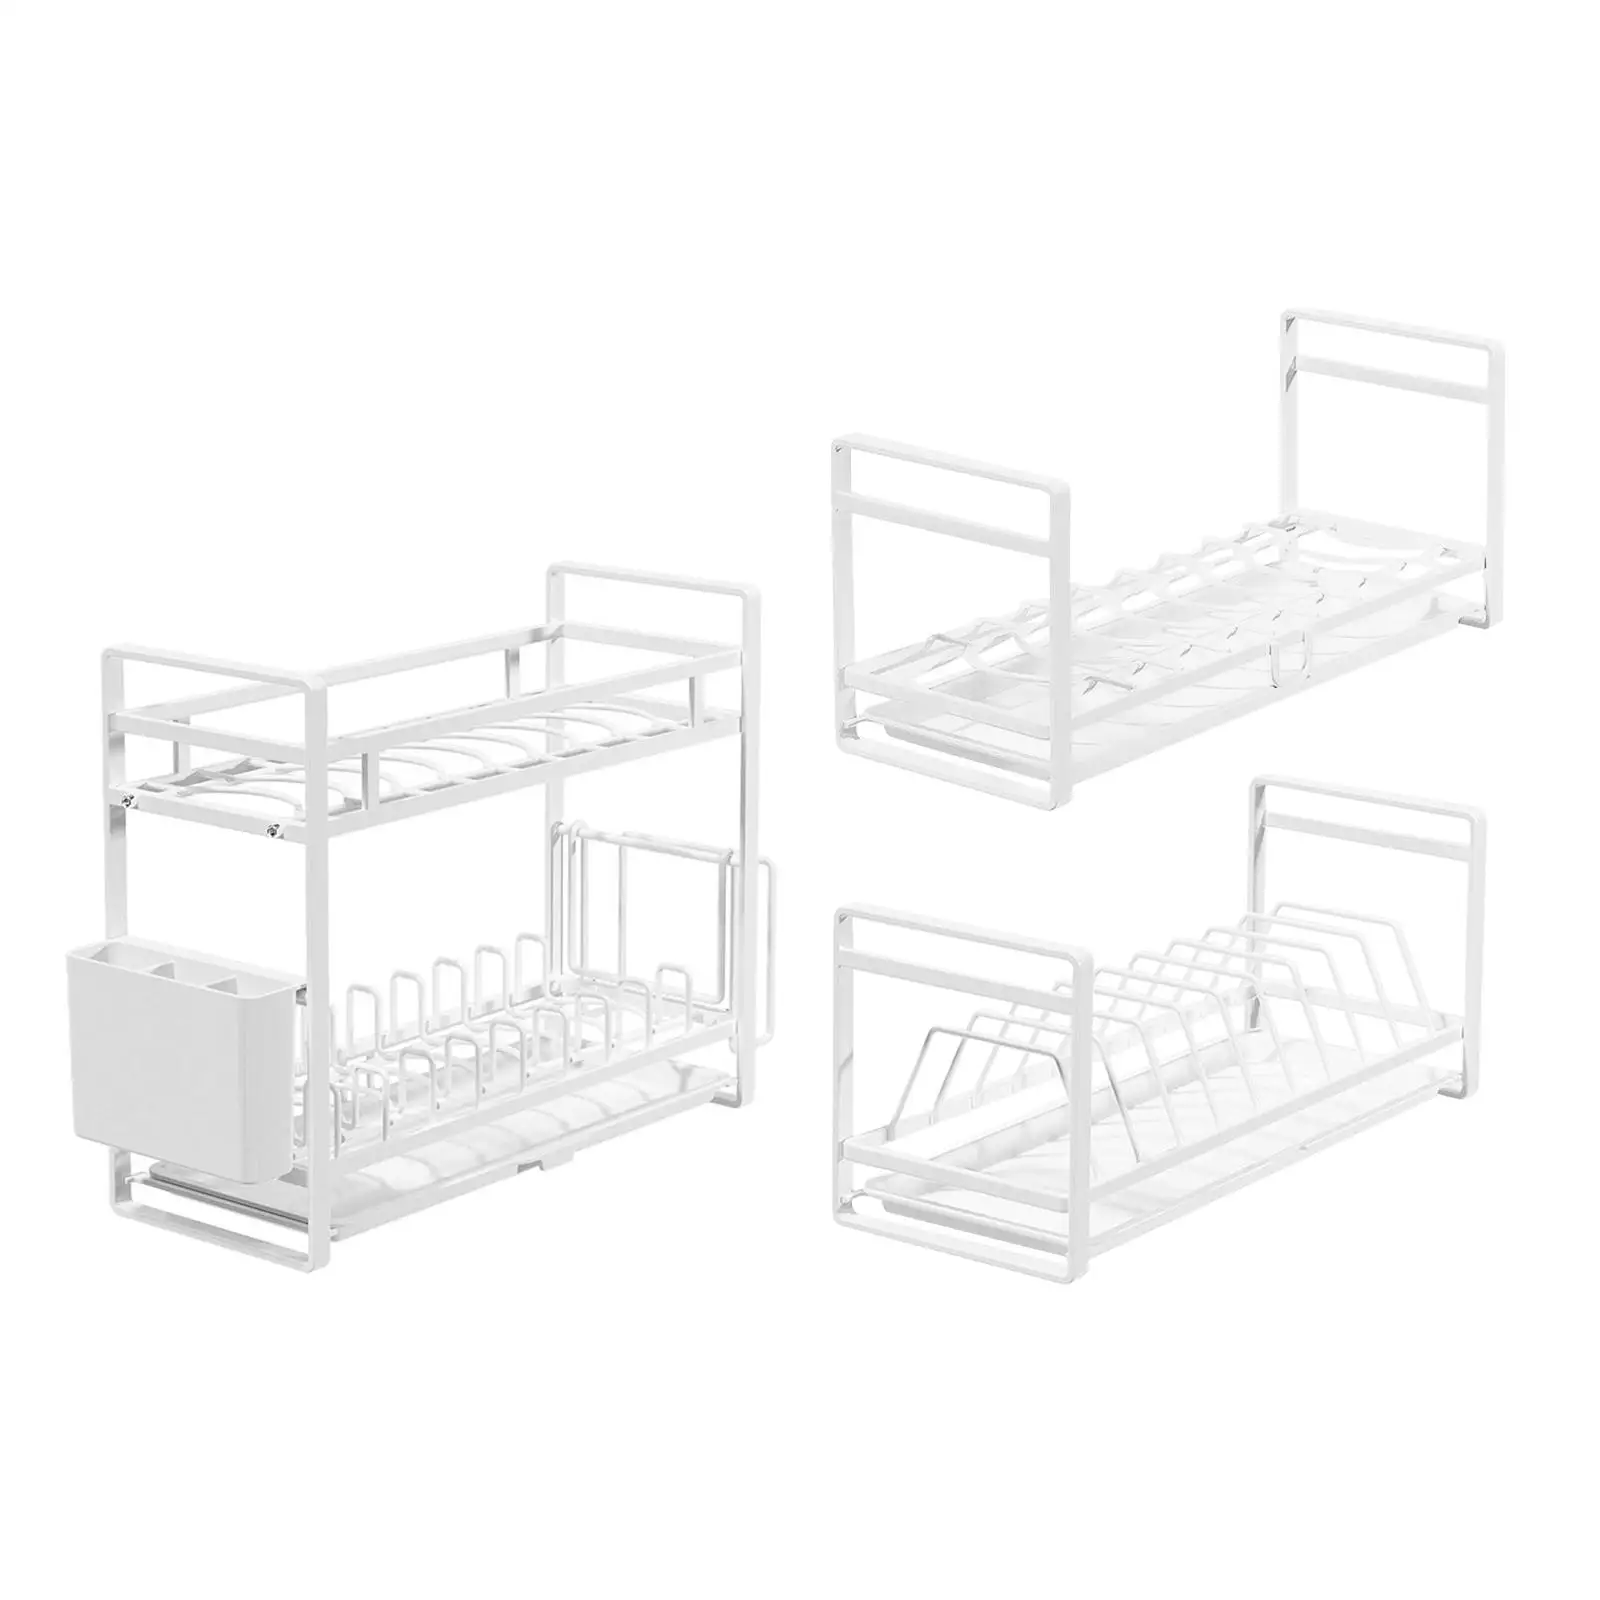 Plate Holder Organizer Dish Storage Rack for Restaurant Cupboard Cabinet